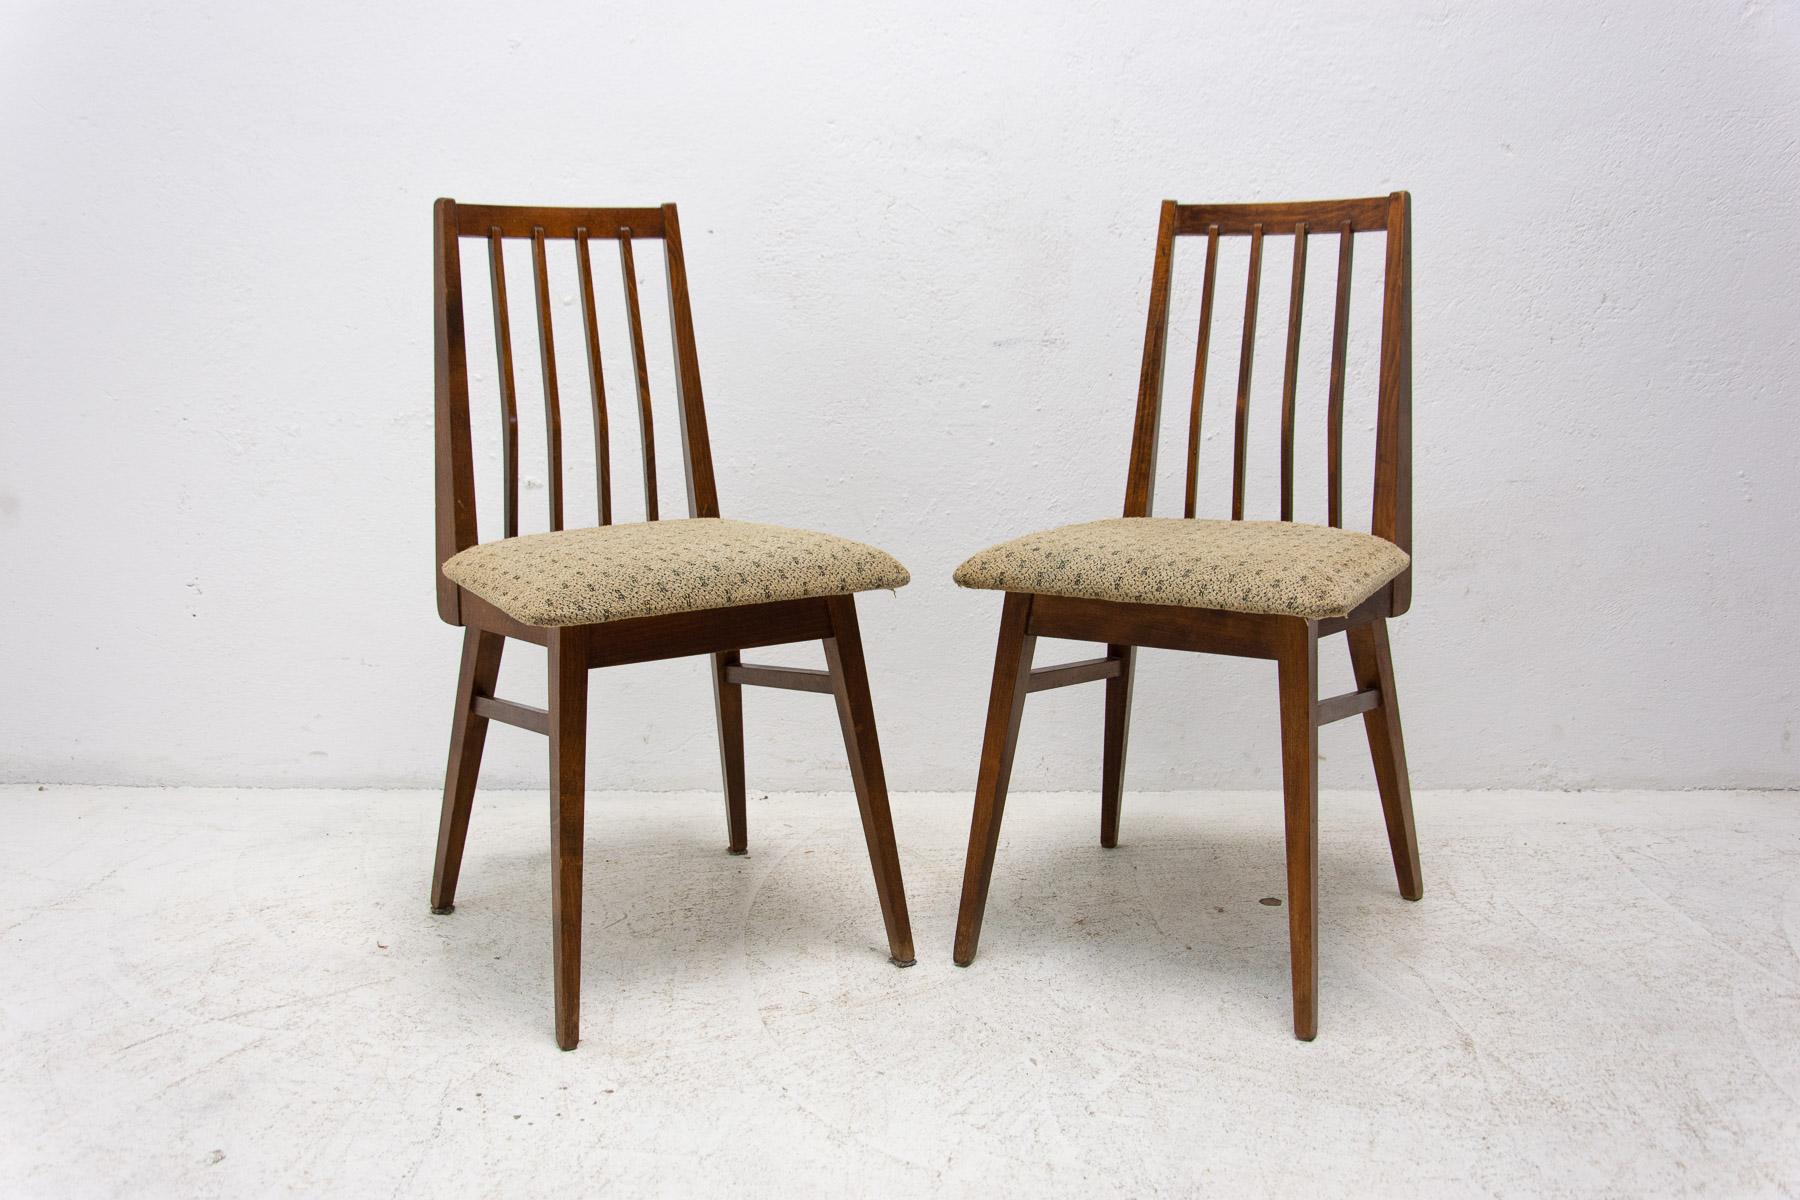 Paire de chaises de salle à manger rembourrées, fabriquées dans l'ancienne Tchécoslovaquie dans les années 1970. Les chaises sont fabriquées en bois de hêtre. Un façonnage très intéressant. La tapisserie et le bois sont en bon état Vintage, montre